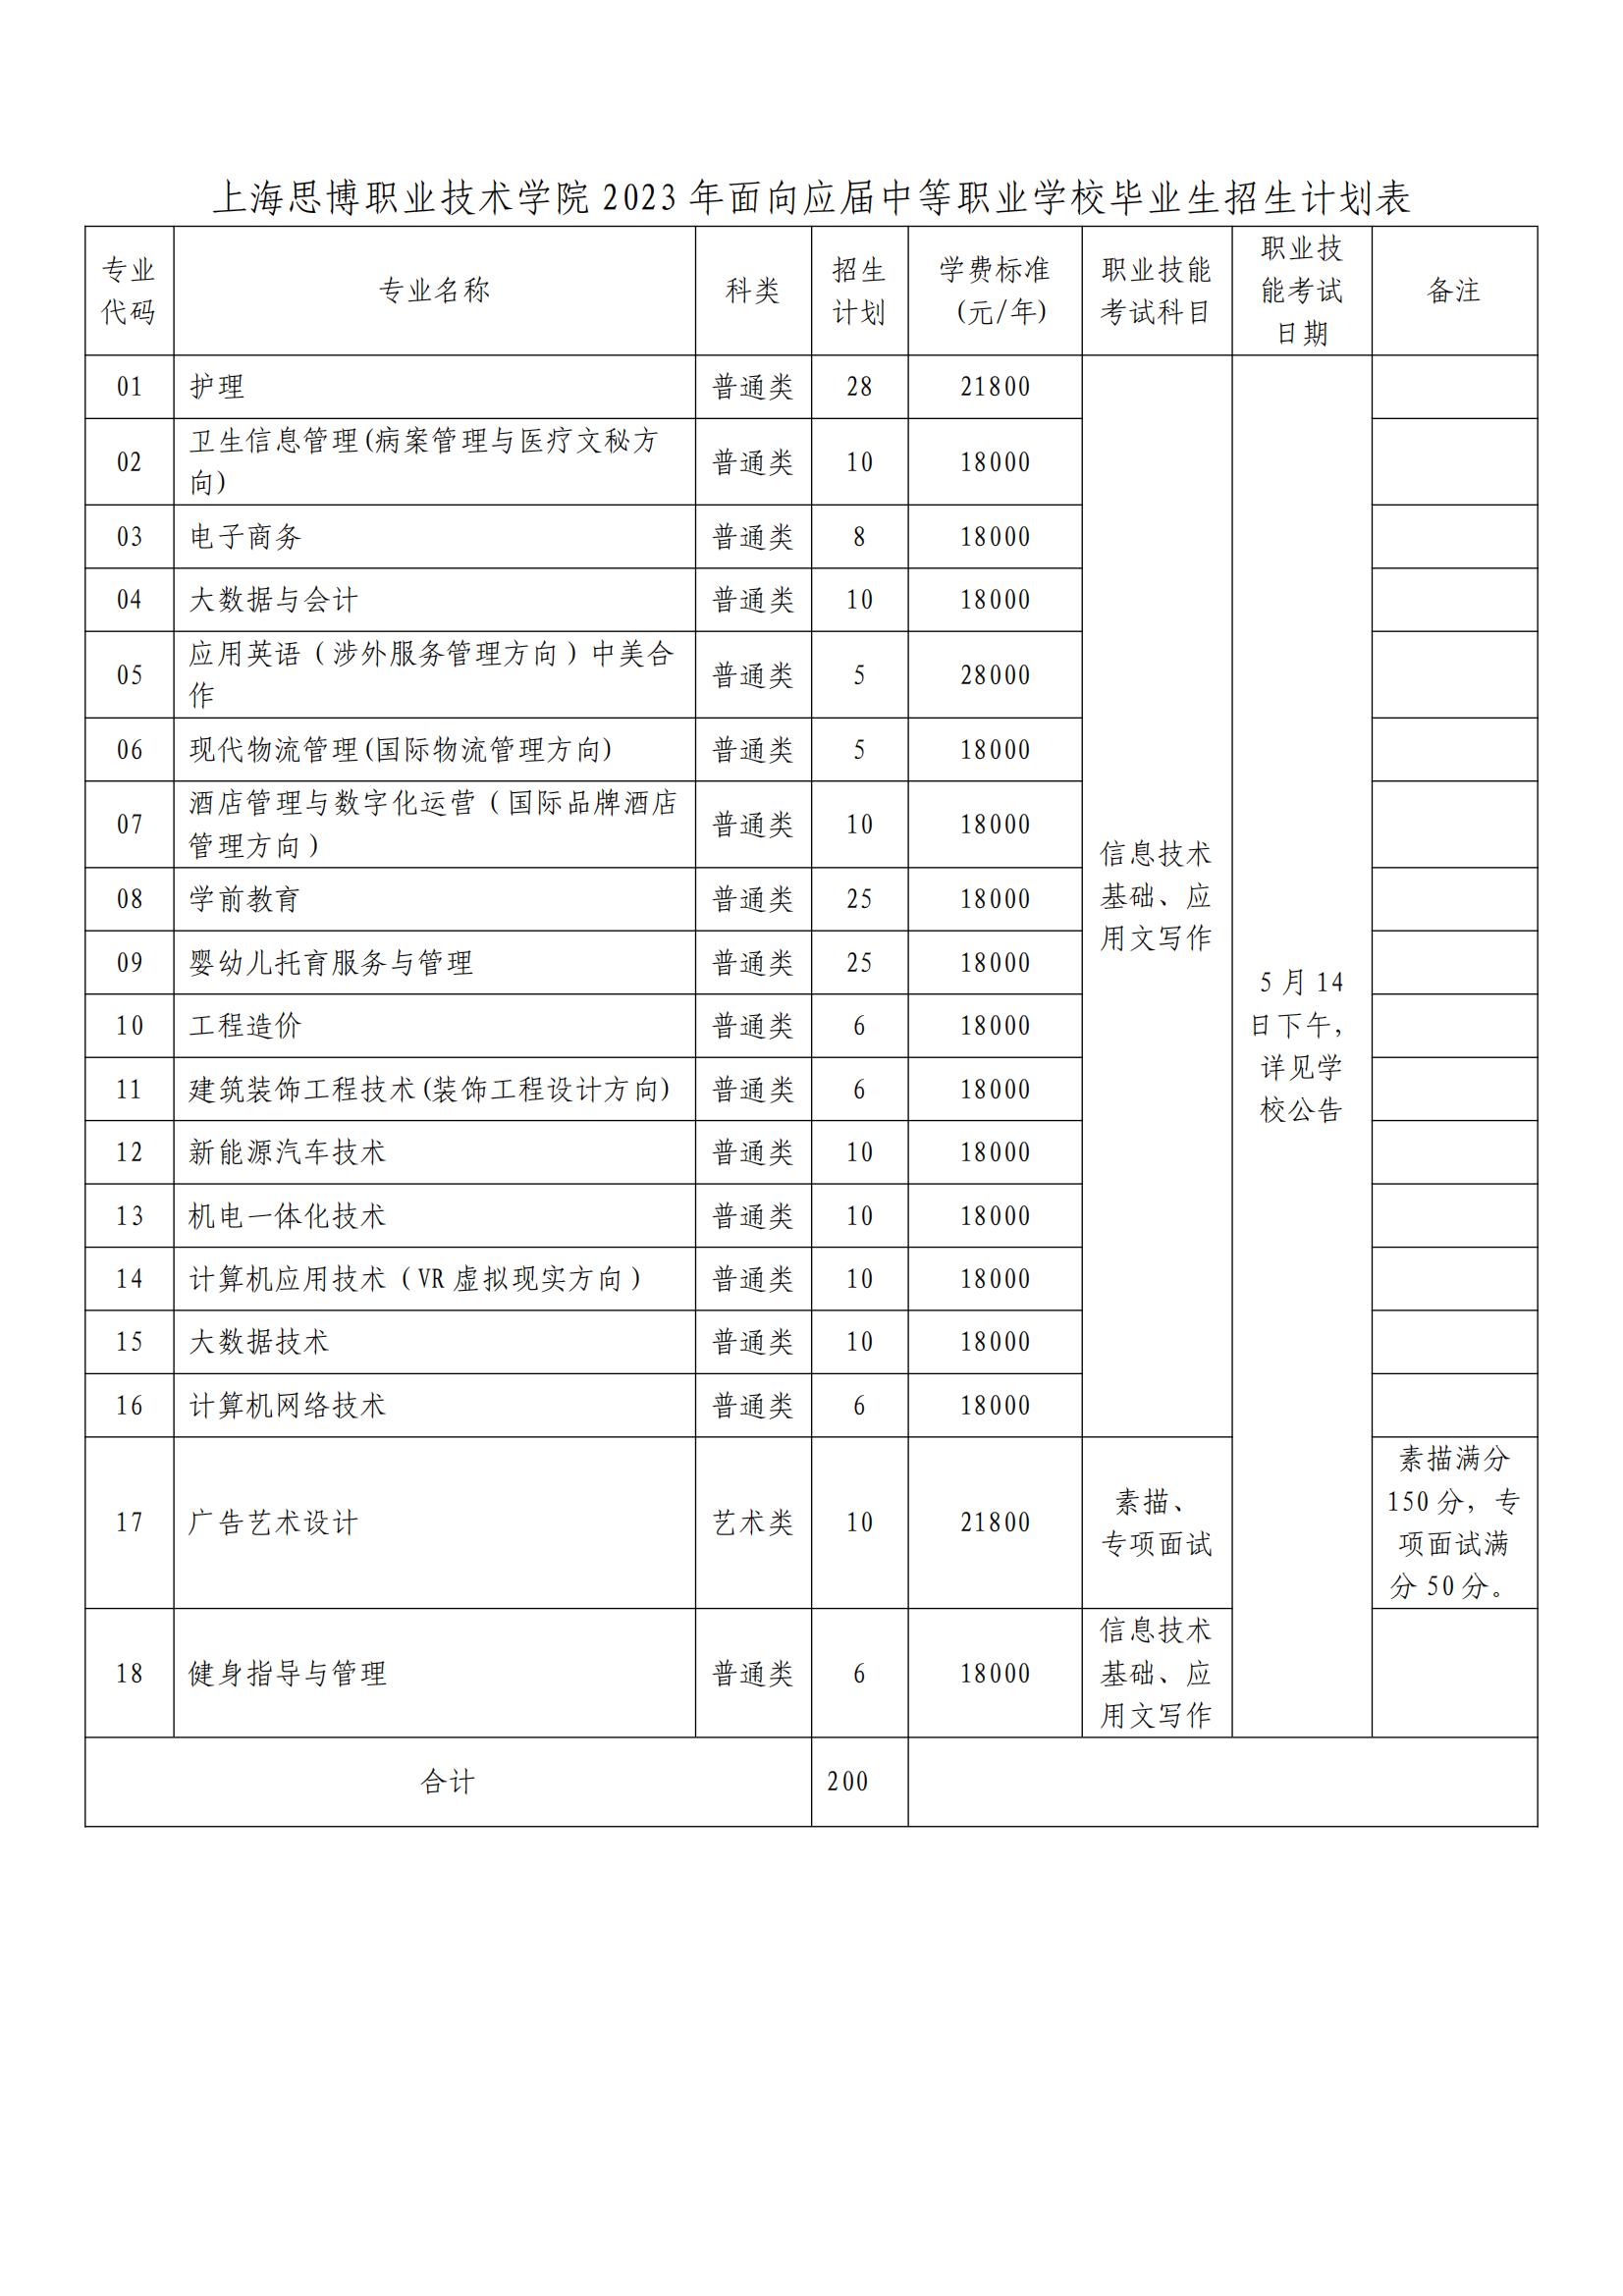 上海思博职业技术学院2023年三校生招生——招生计划